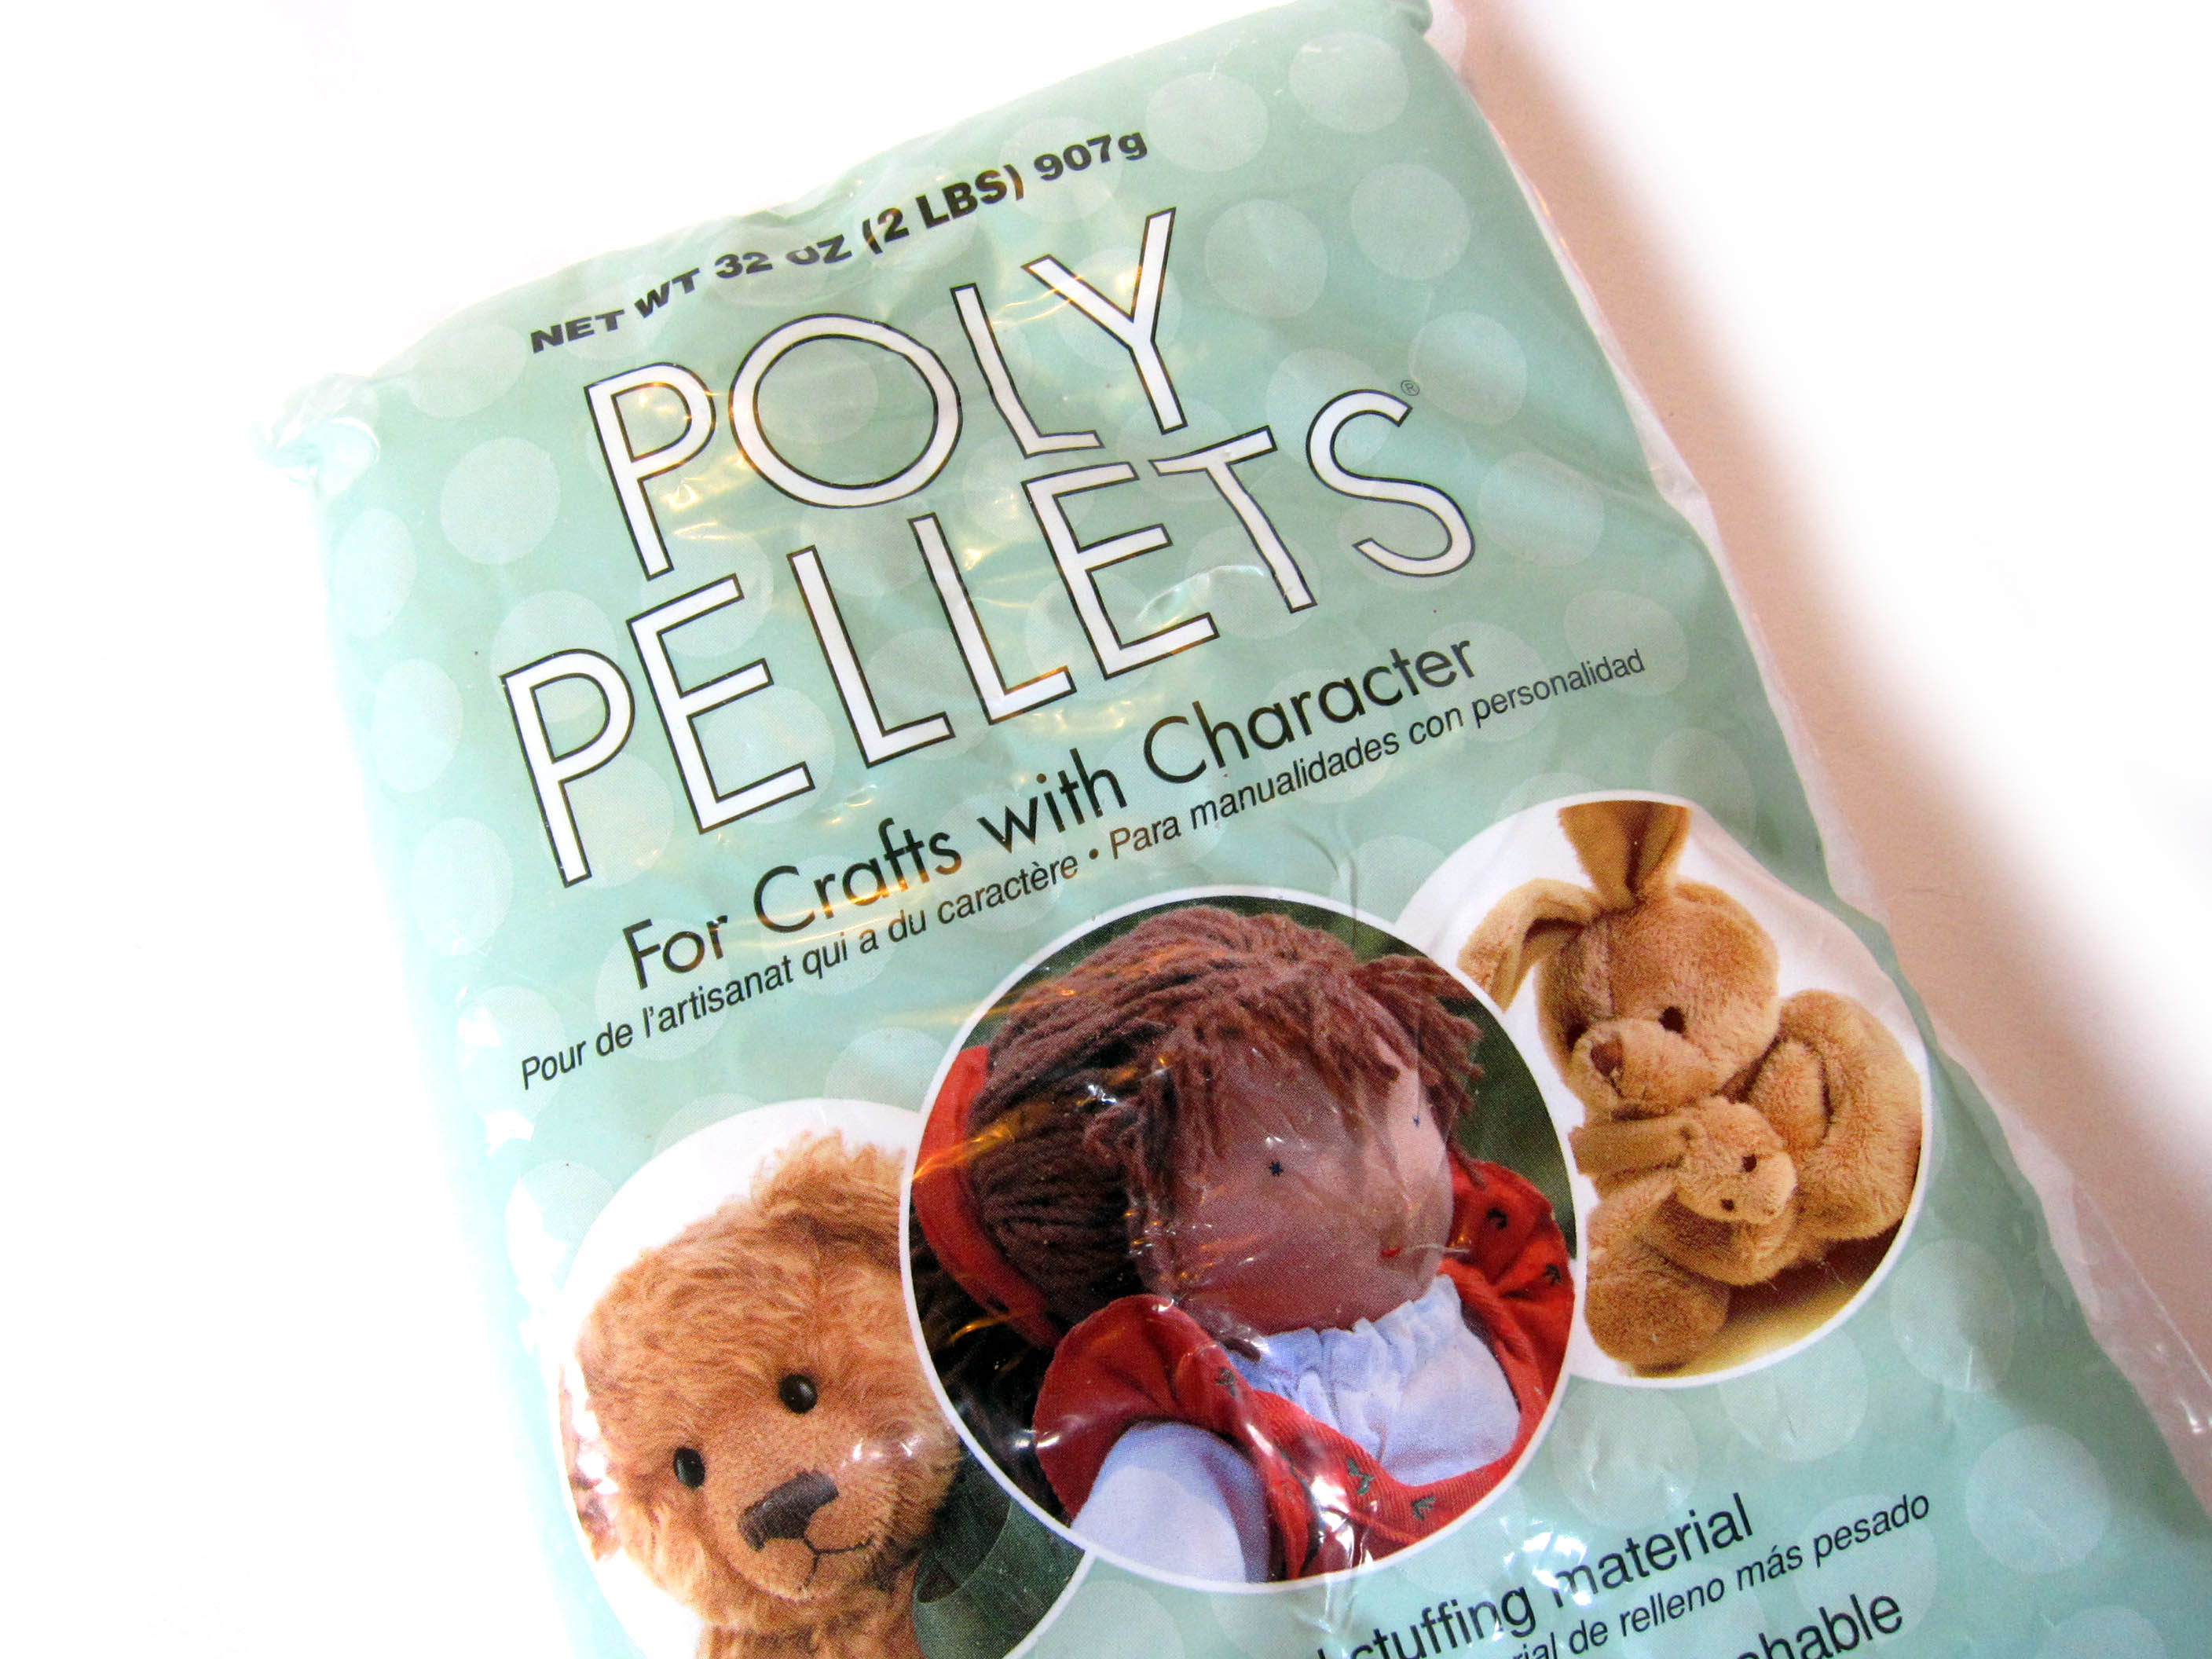 How to Use Poly Pellets in Amigurumi - Shiny Happy World